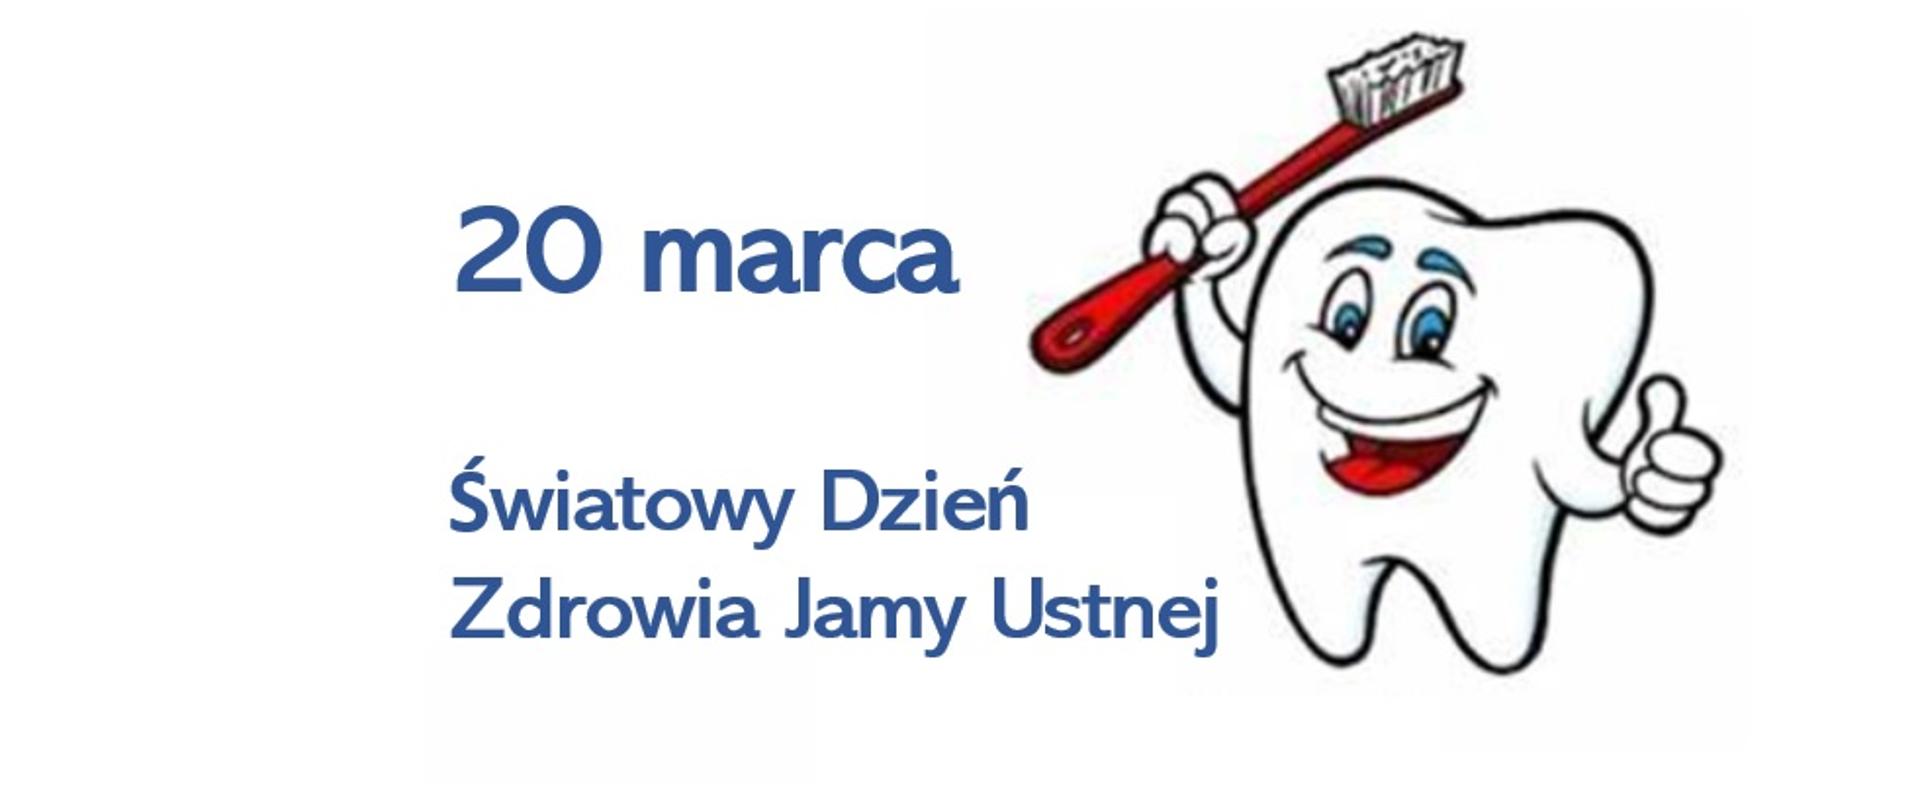 Z lewej strony obrazka zamieszczono napis 20 marca Światowy Dzień Zdrowia Jamy Ustnej, natomiast po prawej stronie znajduje się biały uśmiechnięty ząb z czerwoną szczoteczką